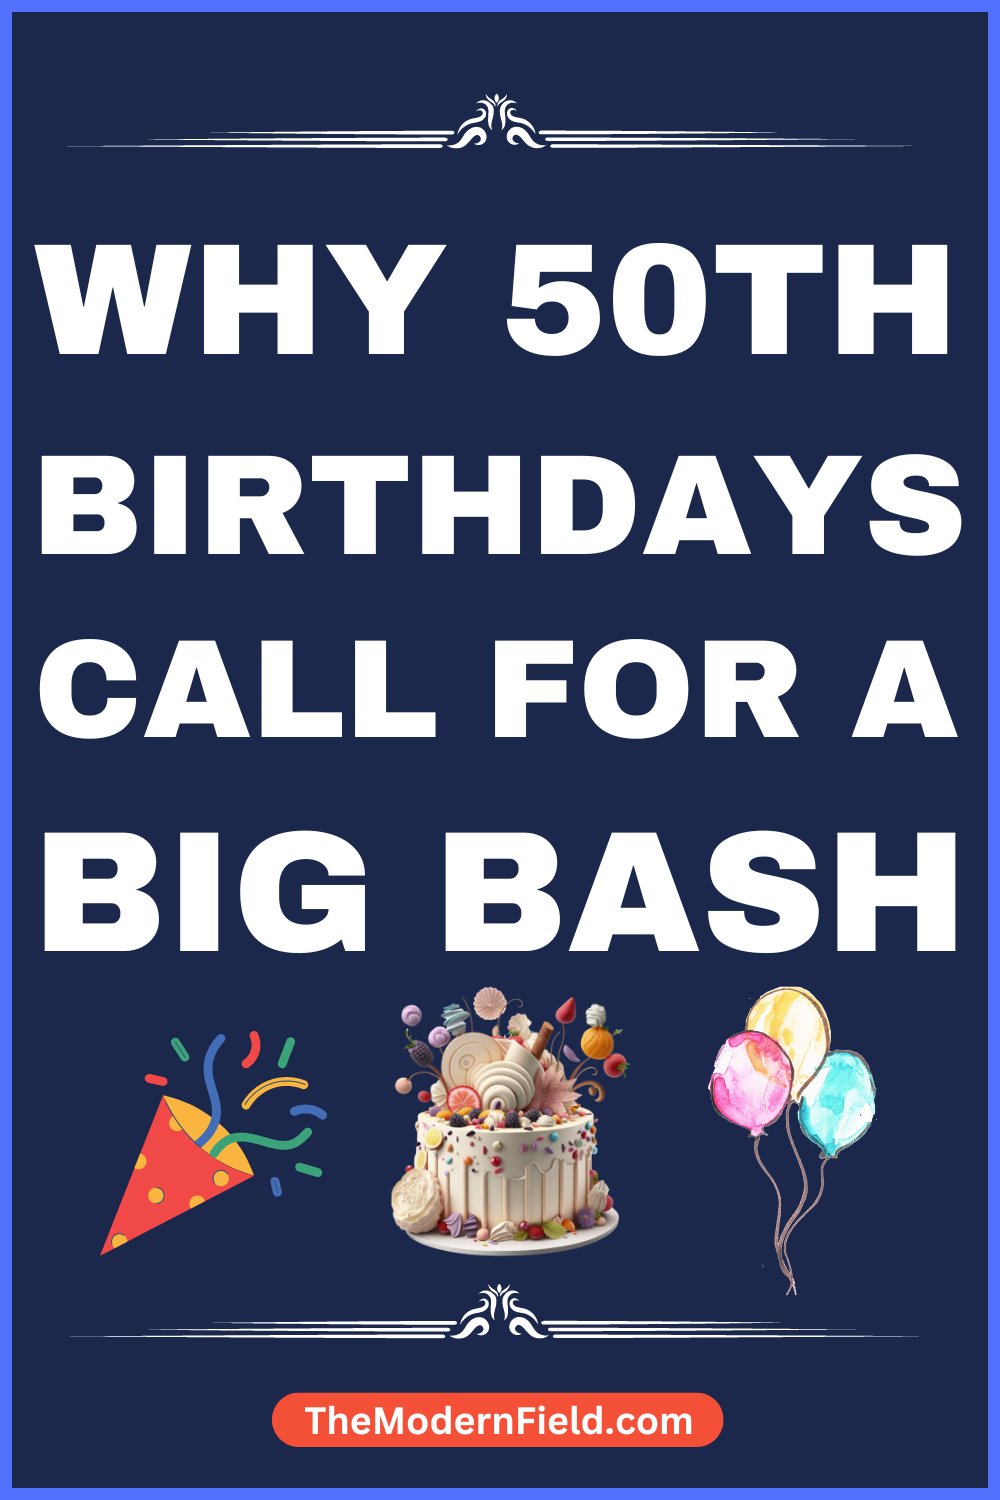 Why 50th Birthdays Call for a Big Bash